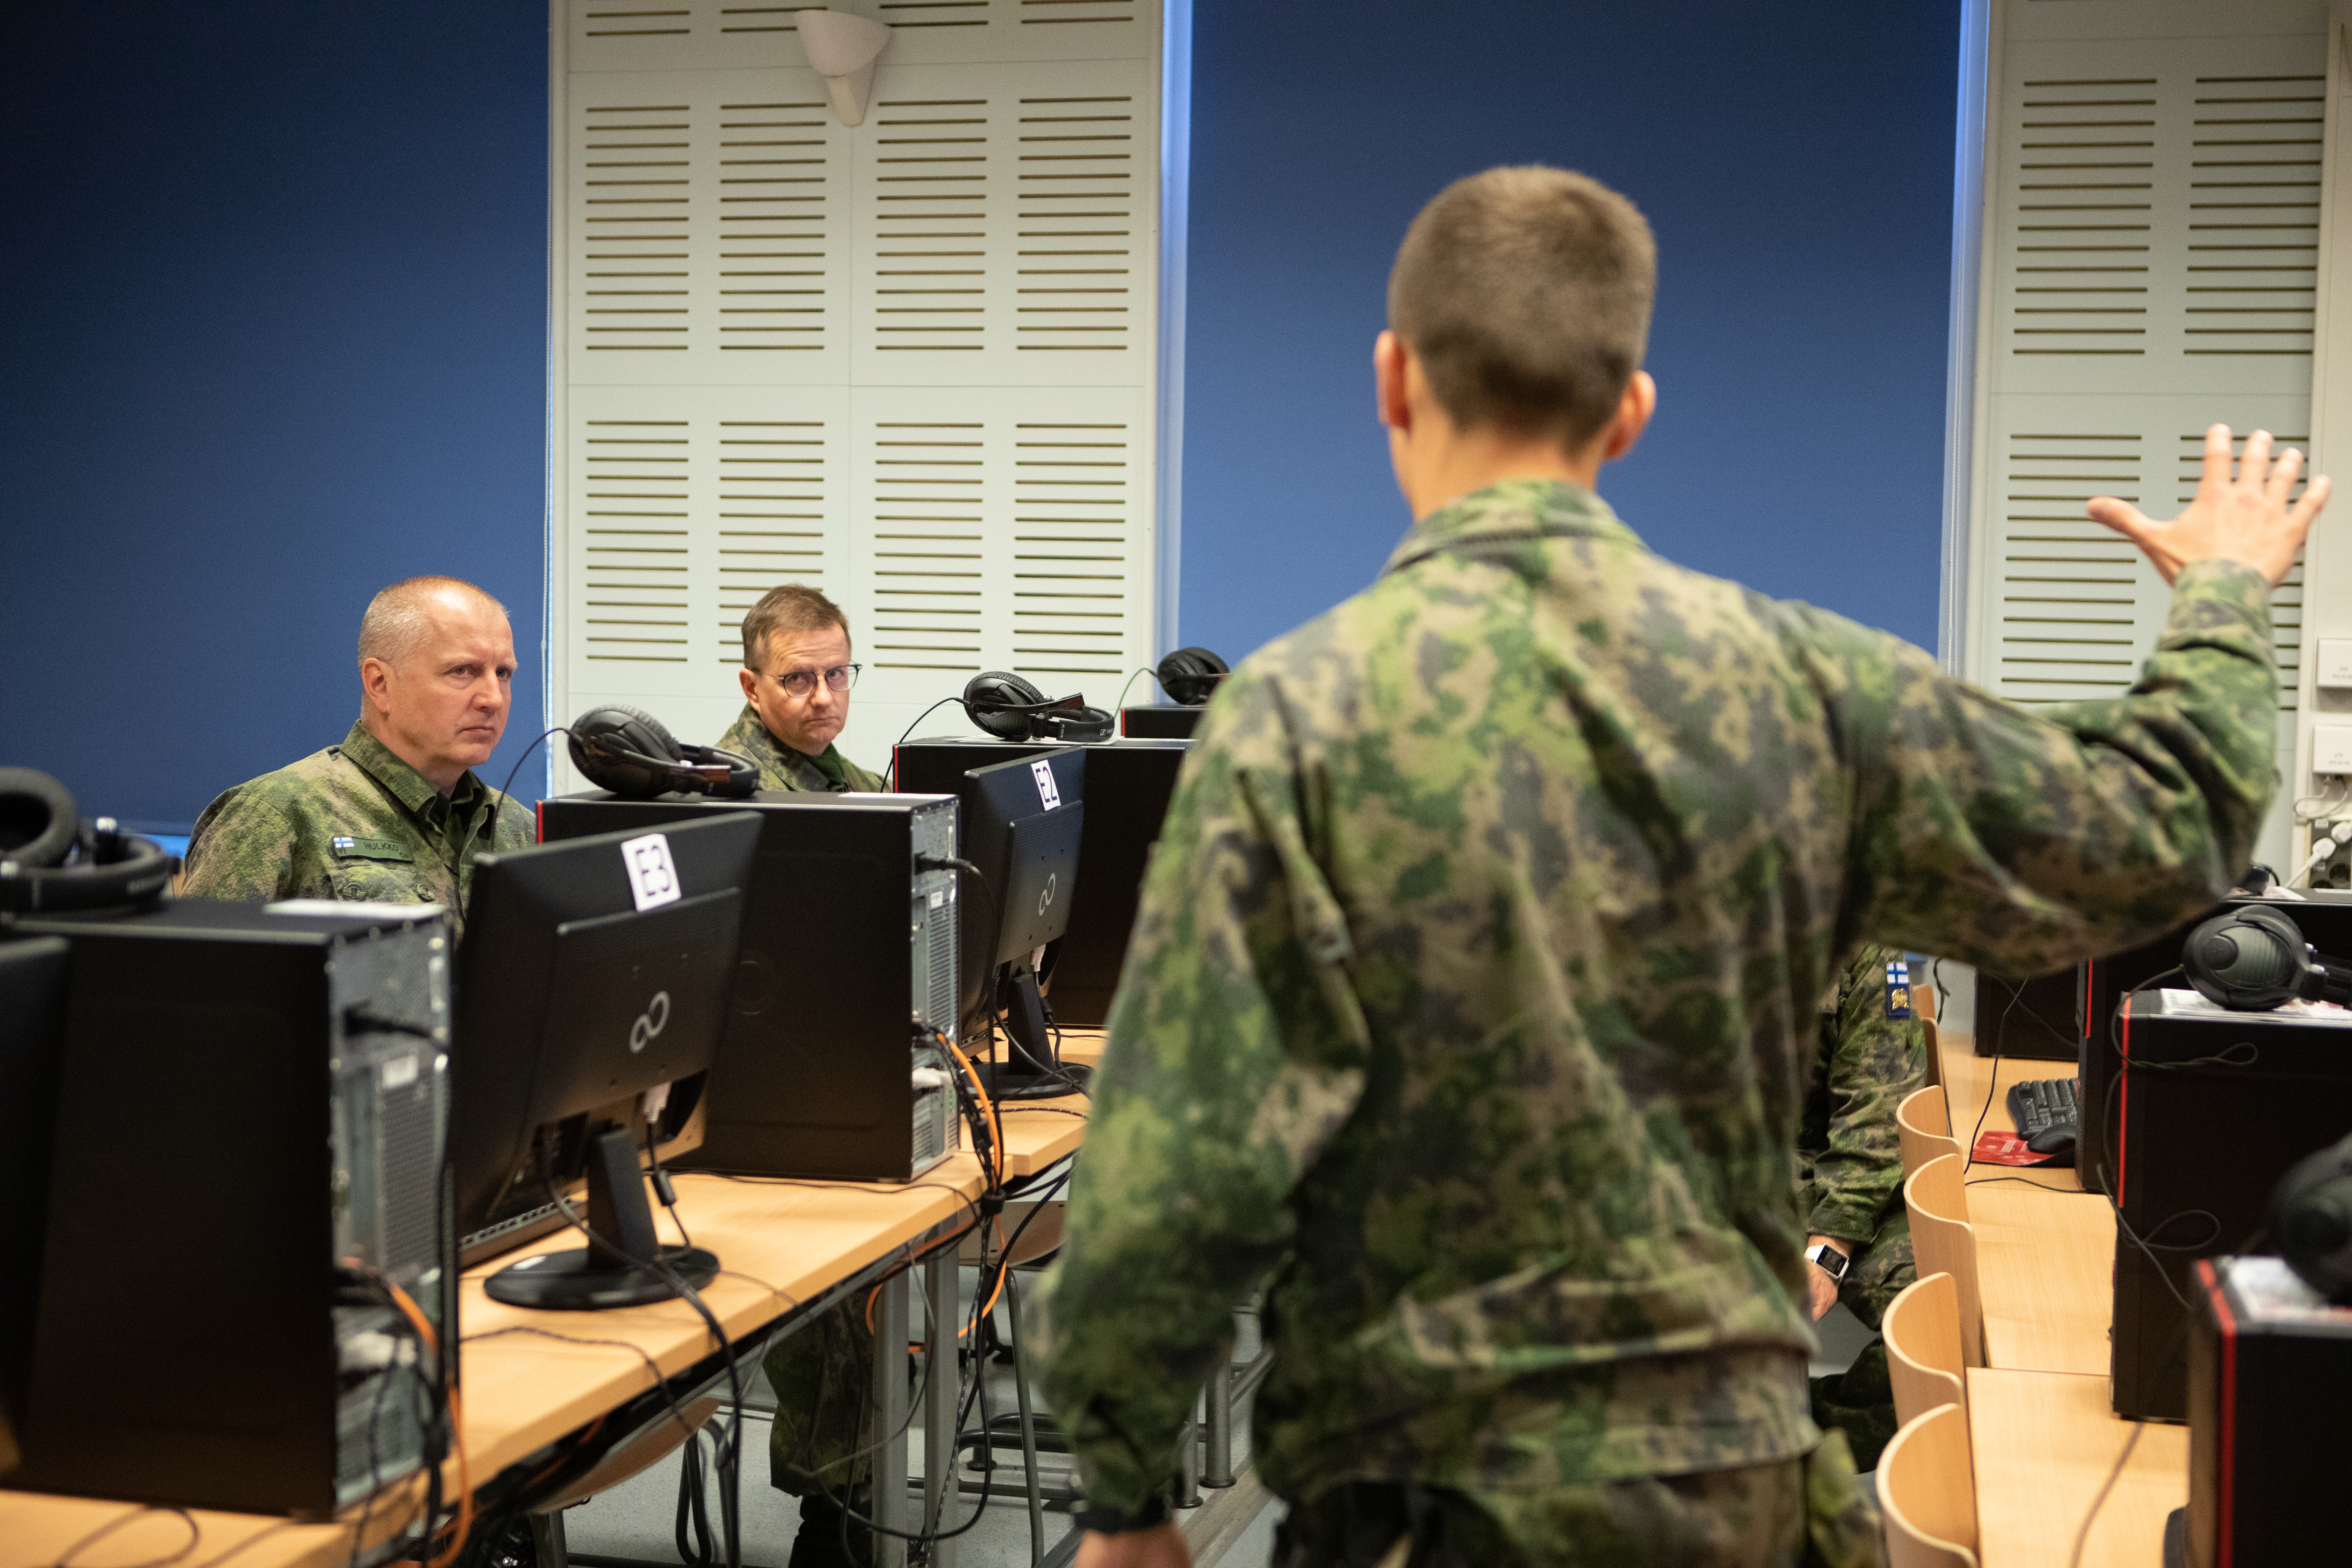 Virtuaalinen koulutusympäristö RUK:ssa, Maavoimien komentaja HUlkko istuu tietokoneen ääressä ja sotilaskouluttaja esittelee virtuaalista koulutusympäristöä.